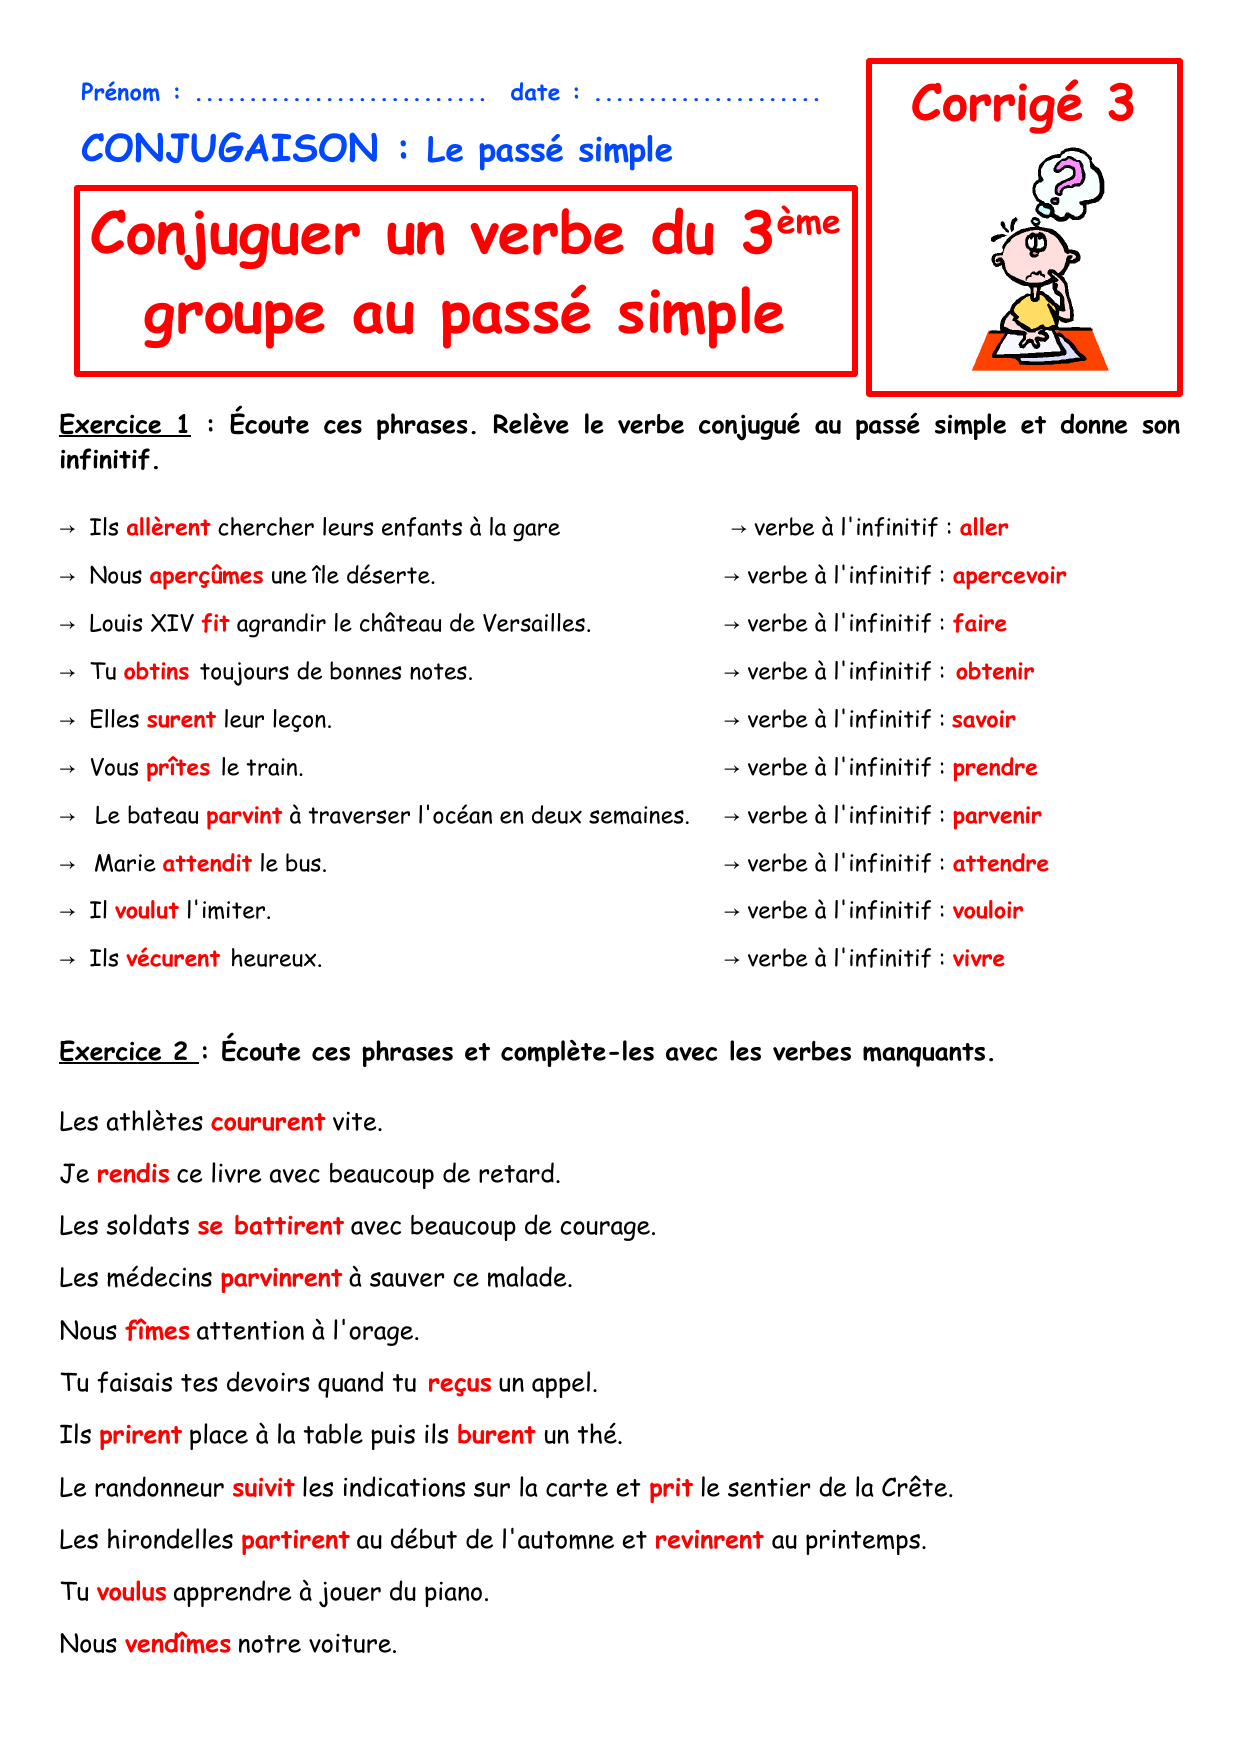 Conjuguer Un Verbe Du 3eme Groupe Au Passe Simple